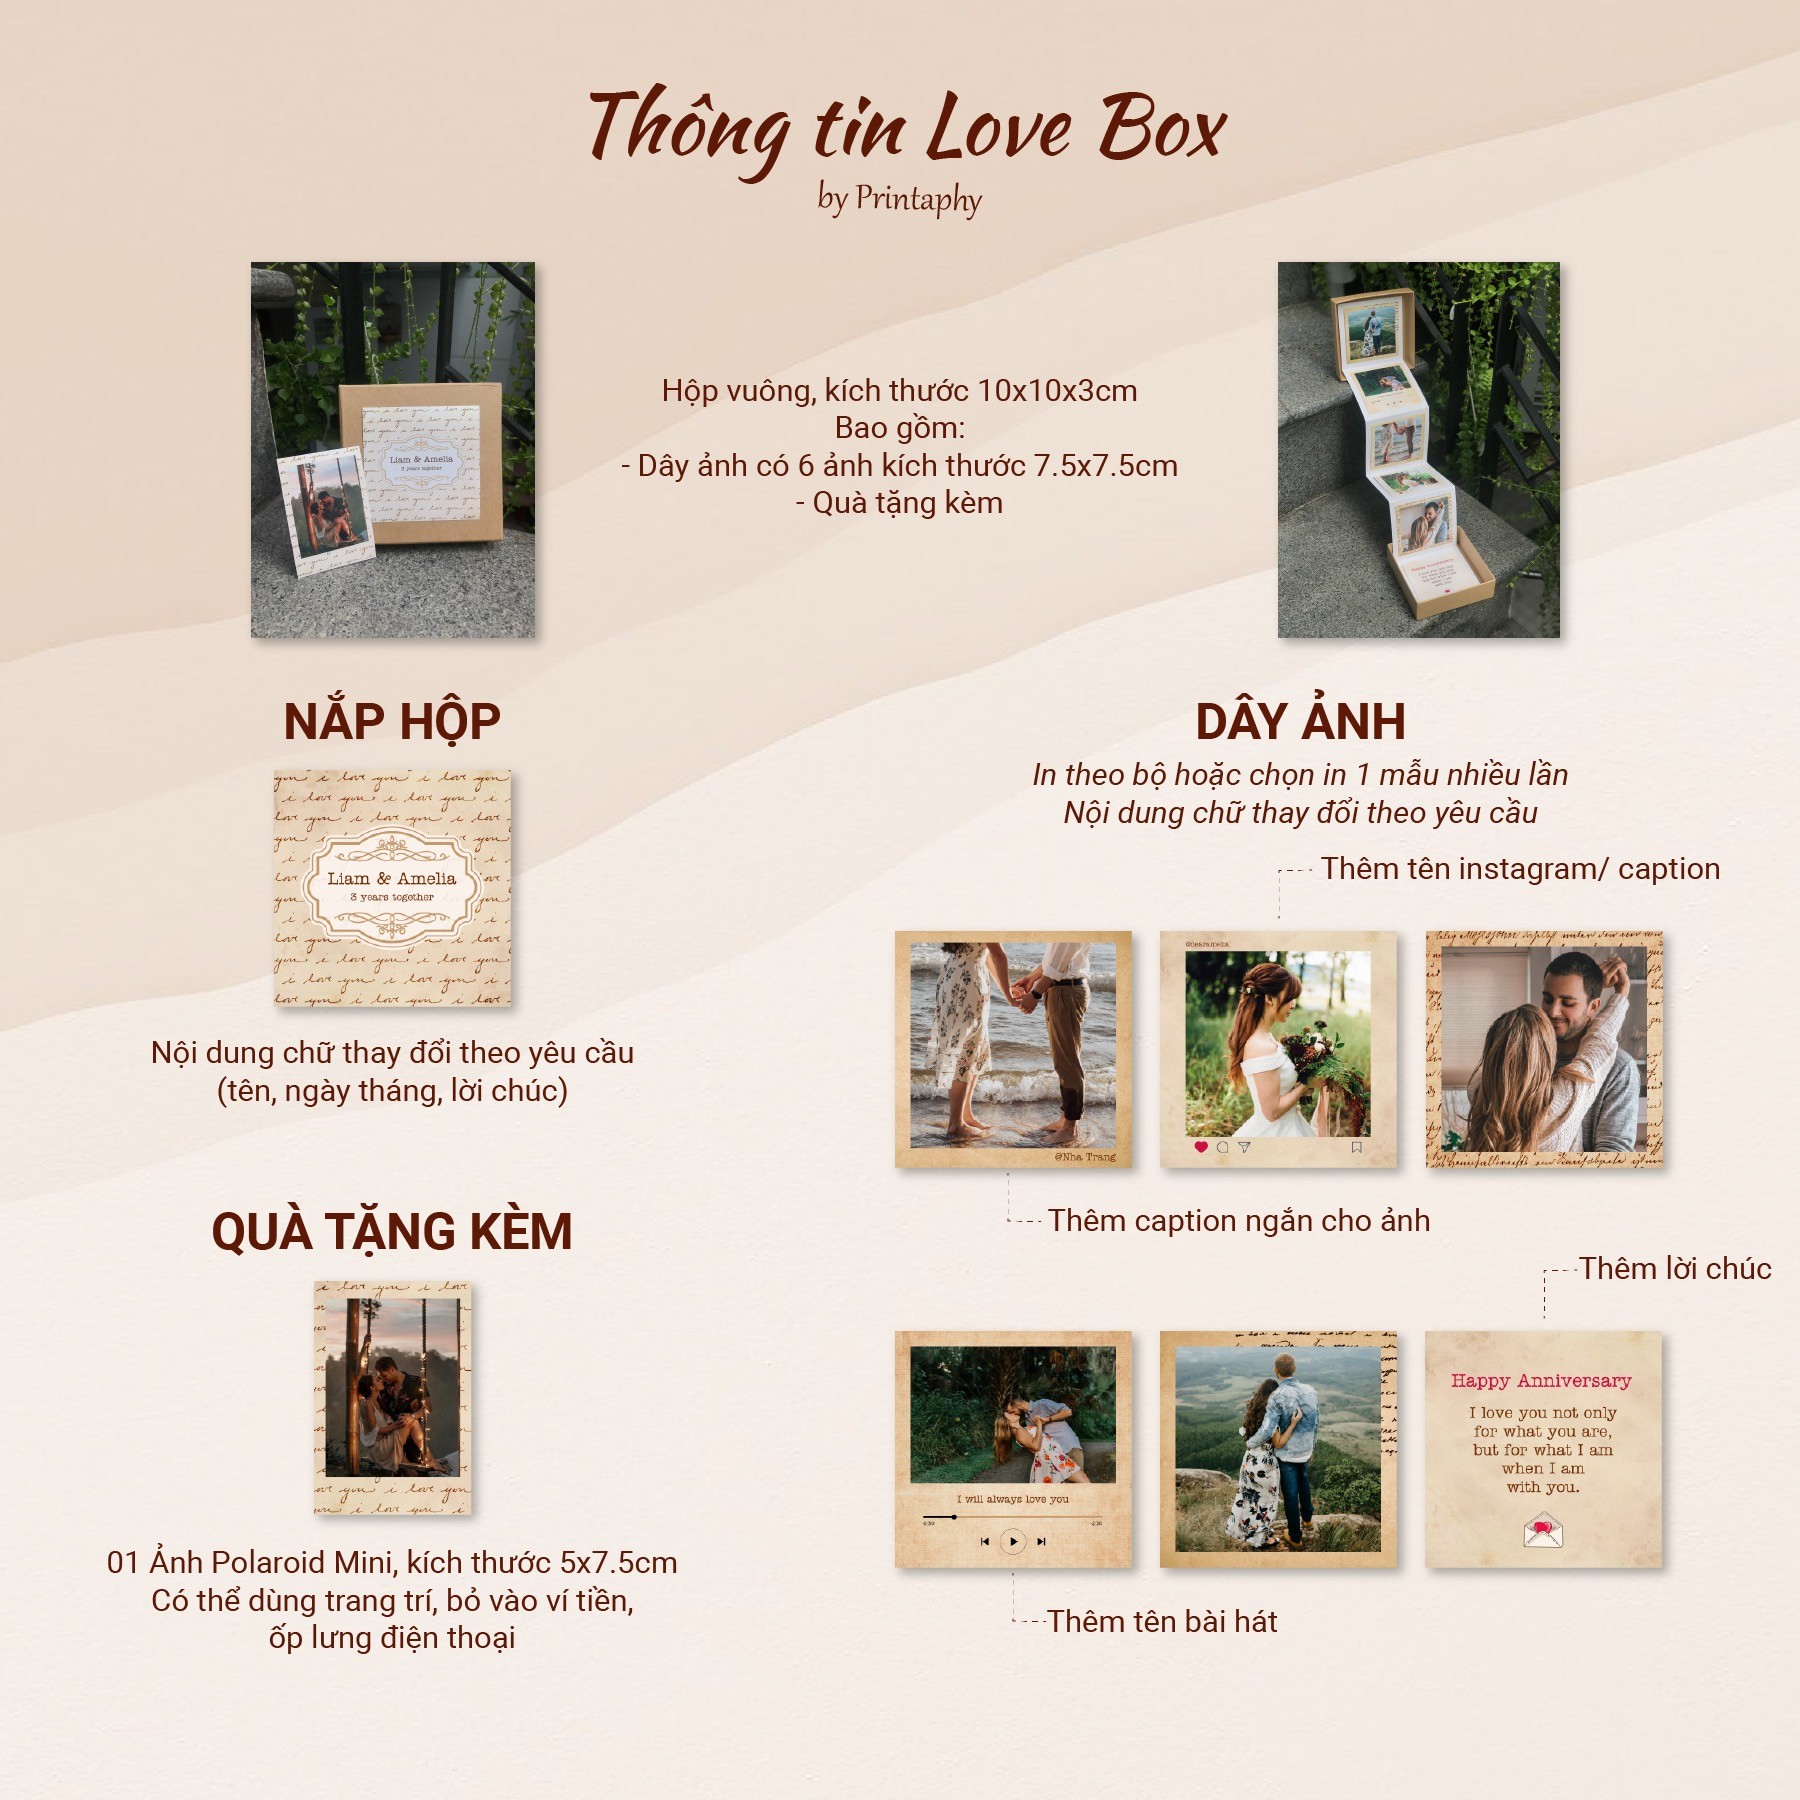 Love Box info